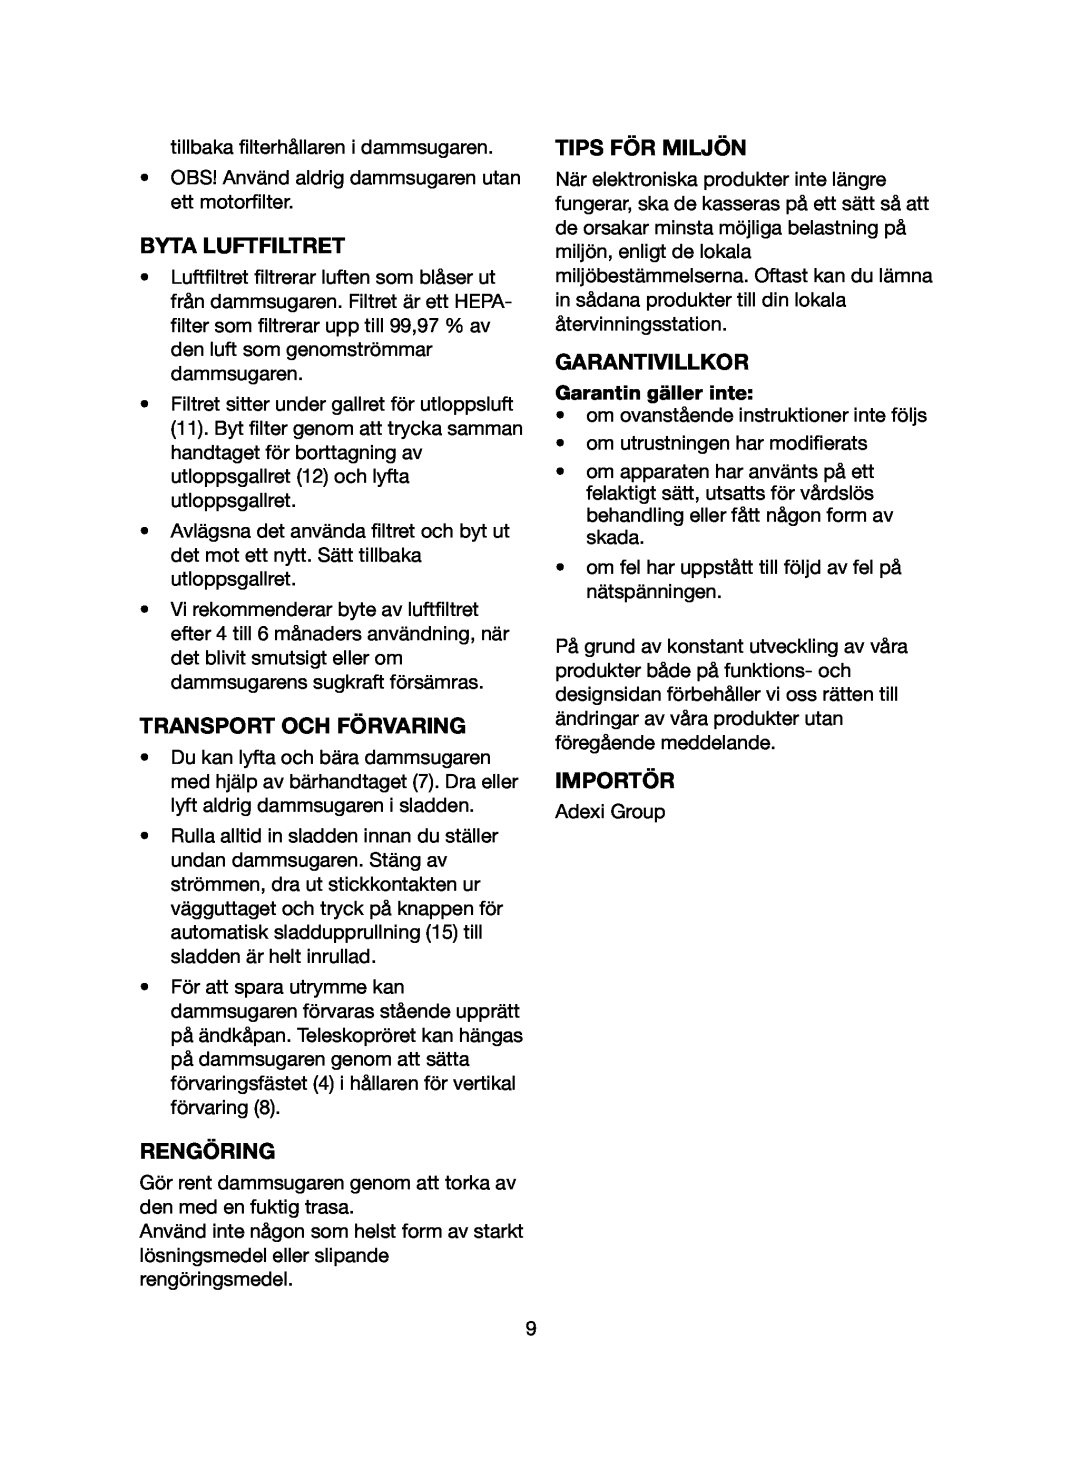 Melissa 740-109 manual Byta Luftfiltret, Transport Och Förvaring, Rengöring, Tips För Miljön, Garantivillkor, Importör 